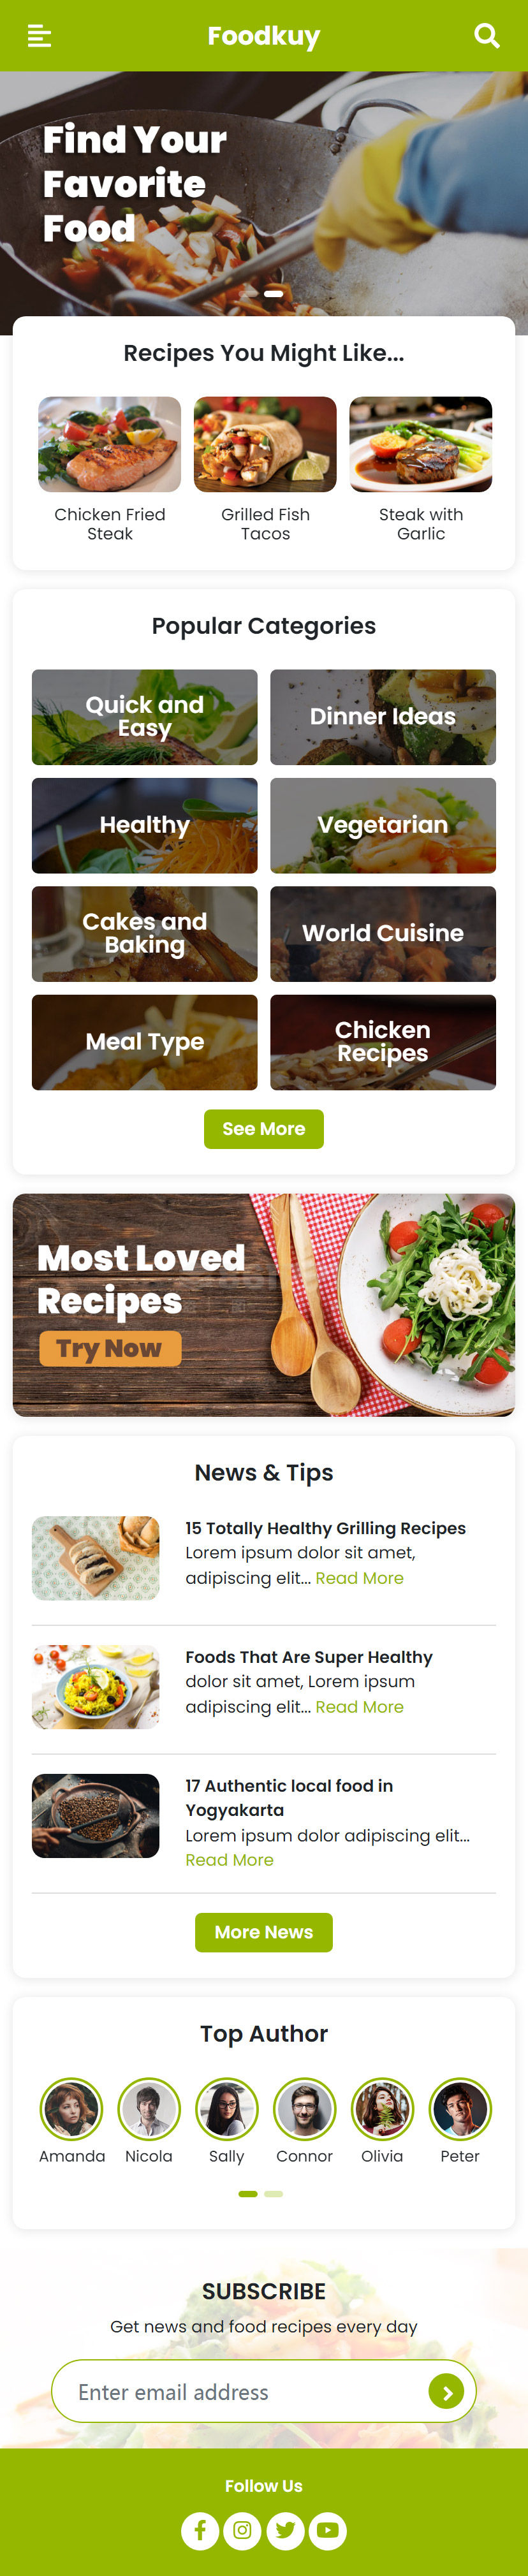 绿色的美食菜谱制作分享平台手机网站模板html